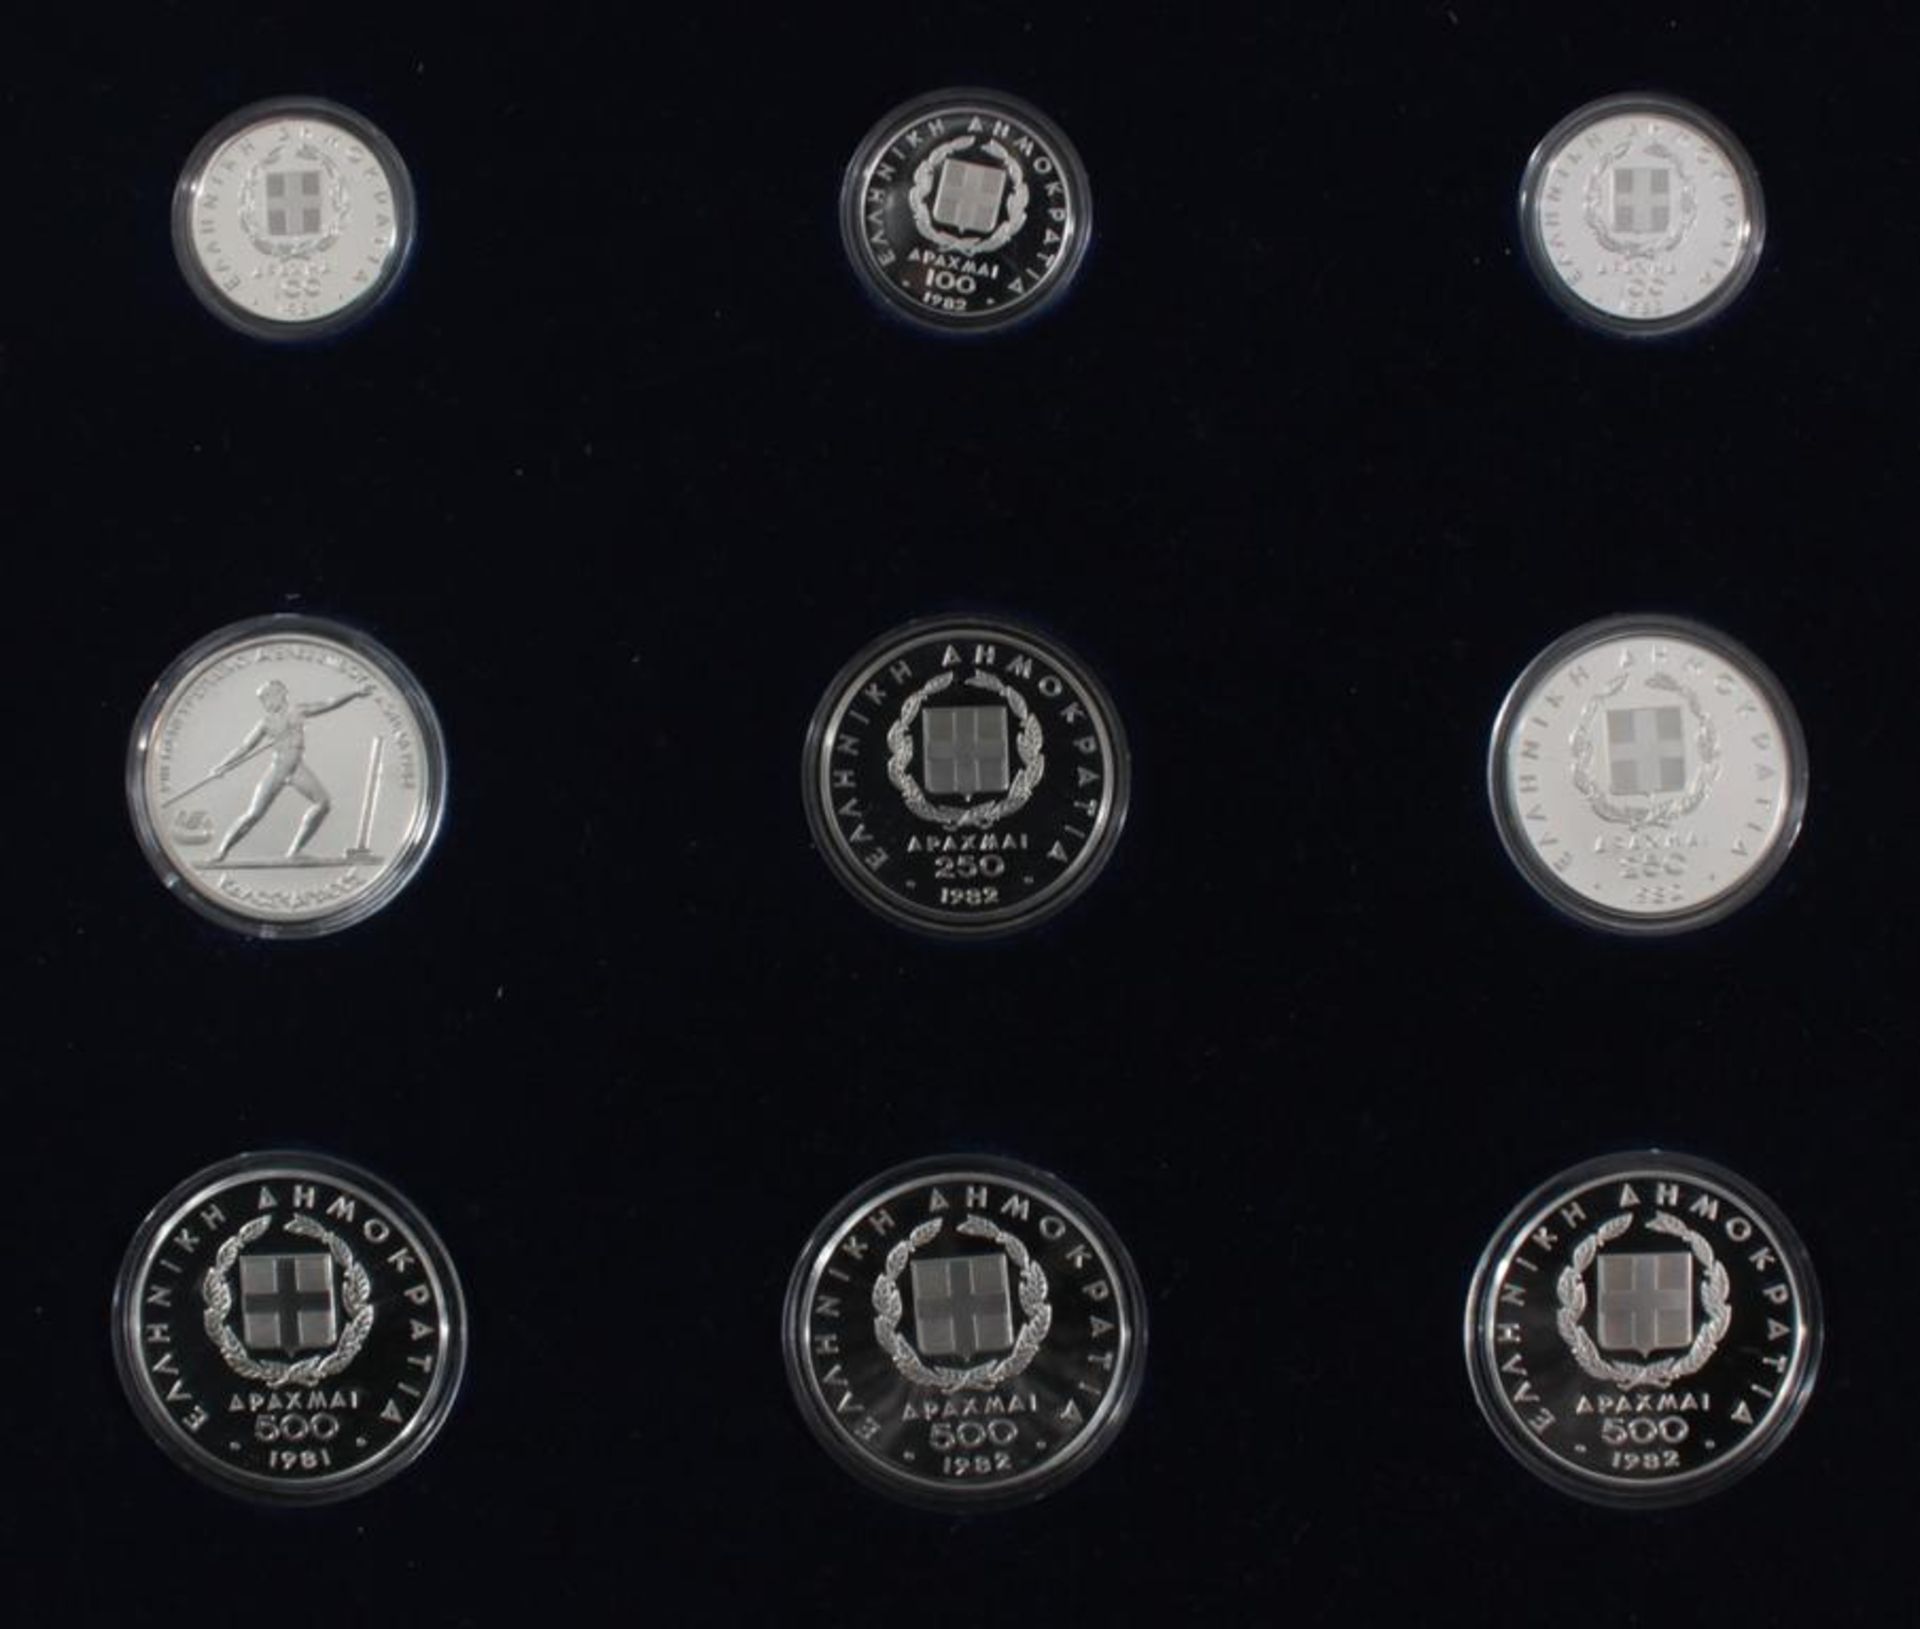 Griechenland, Olympische Spiele 1984, Silbermünzen in PP, Leichtathletik24 Silbermünzen in PP, in - Bild 5 aus 6